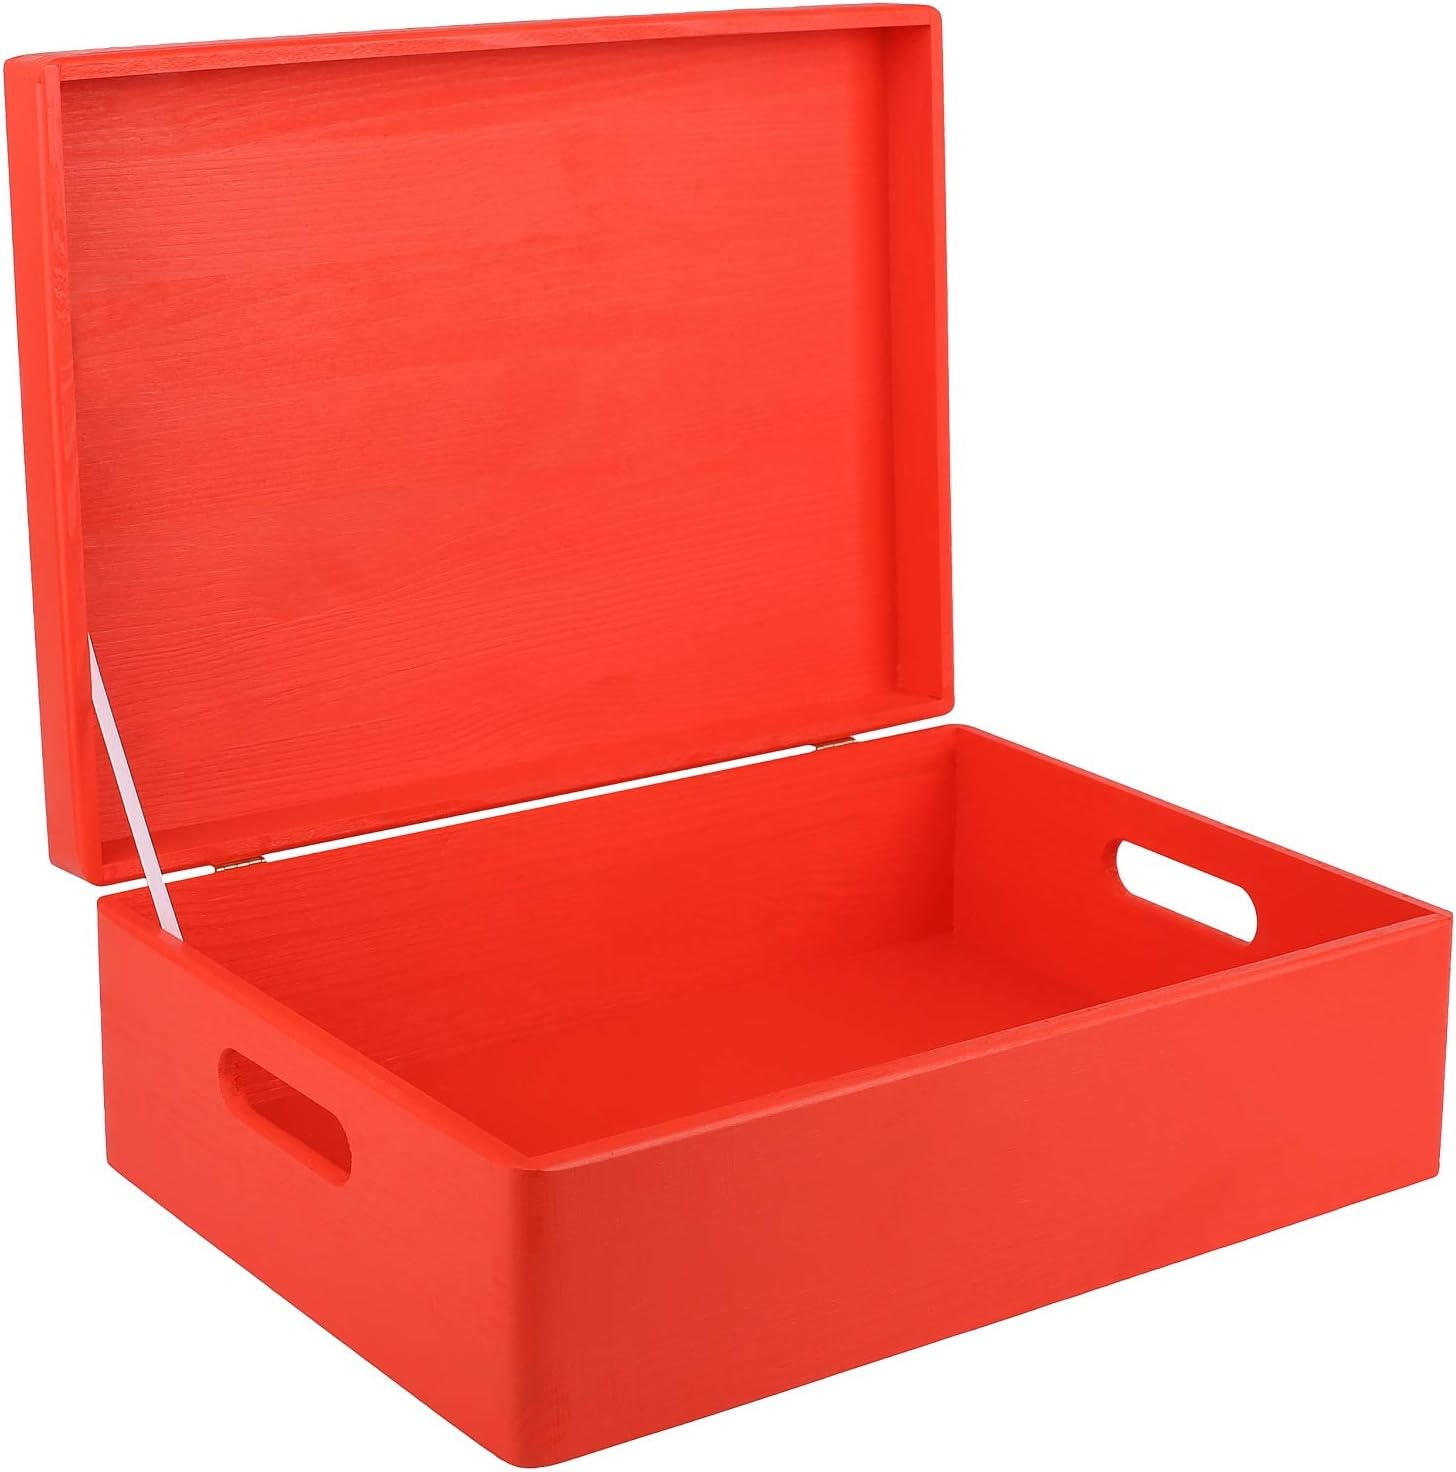 Caja de almacenaje con tapa de madera RE-Wood® en color rojo de